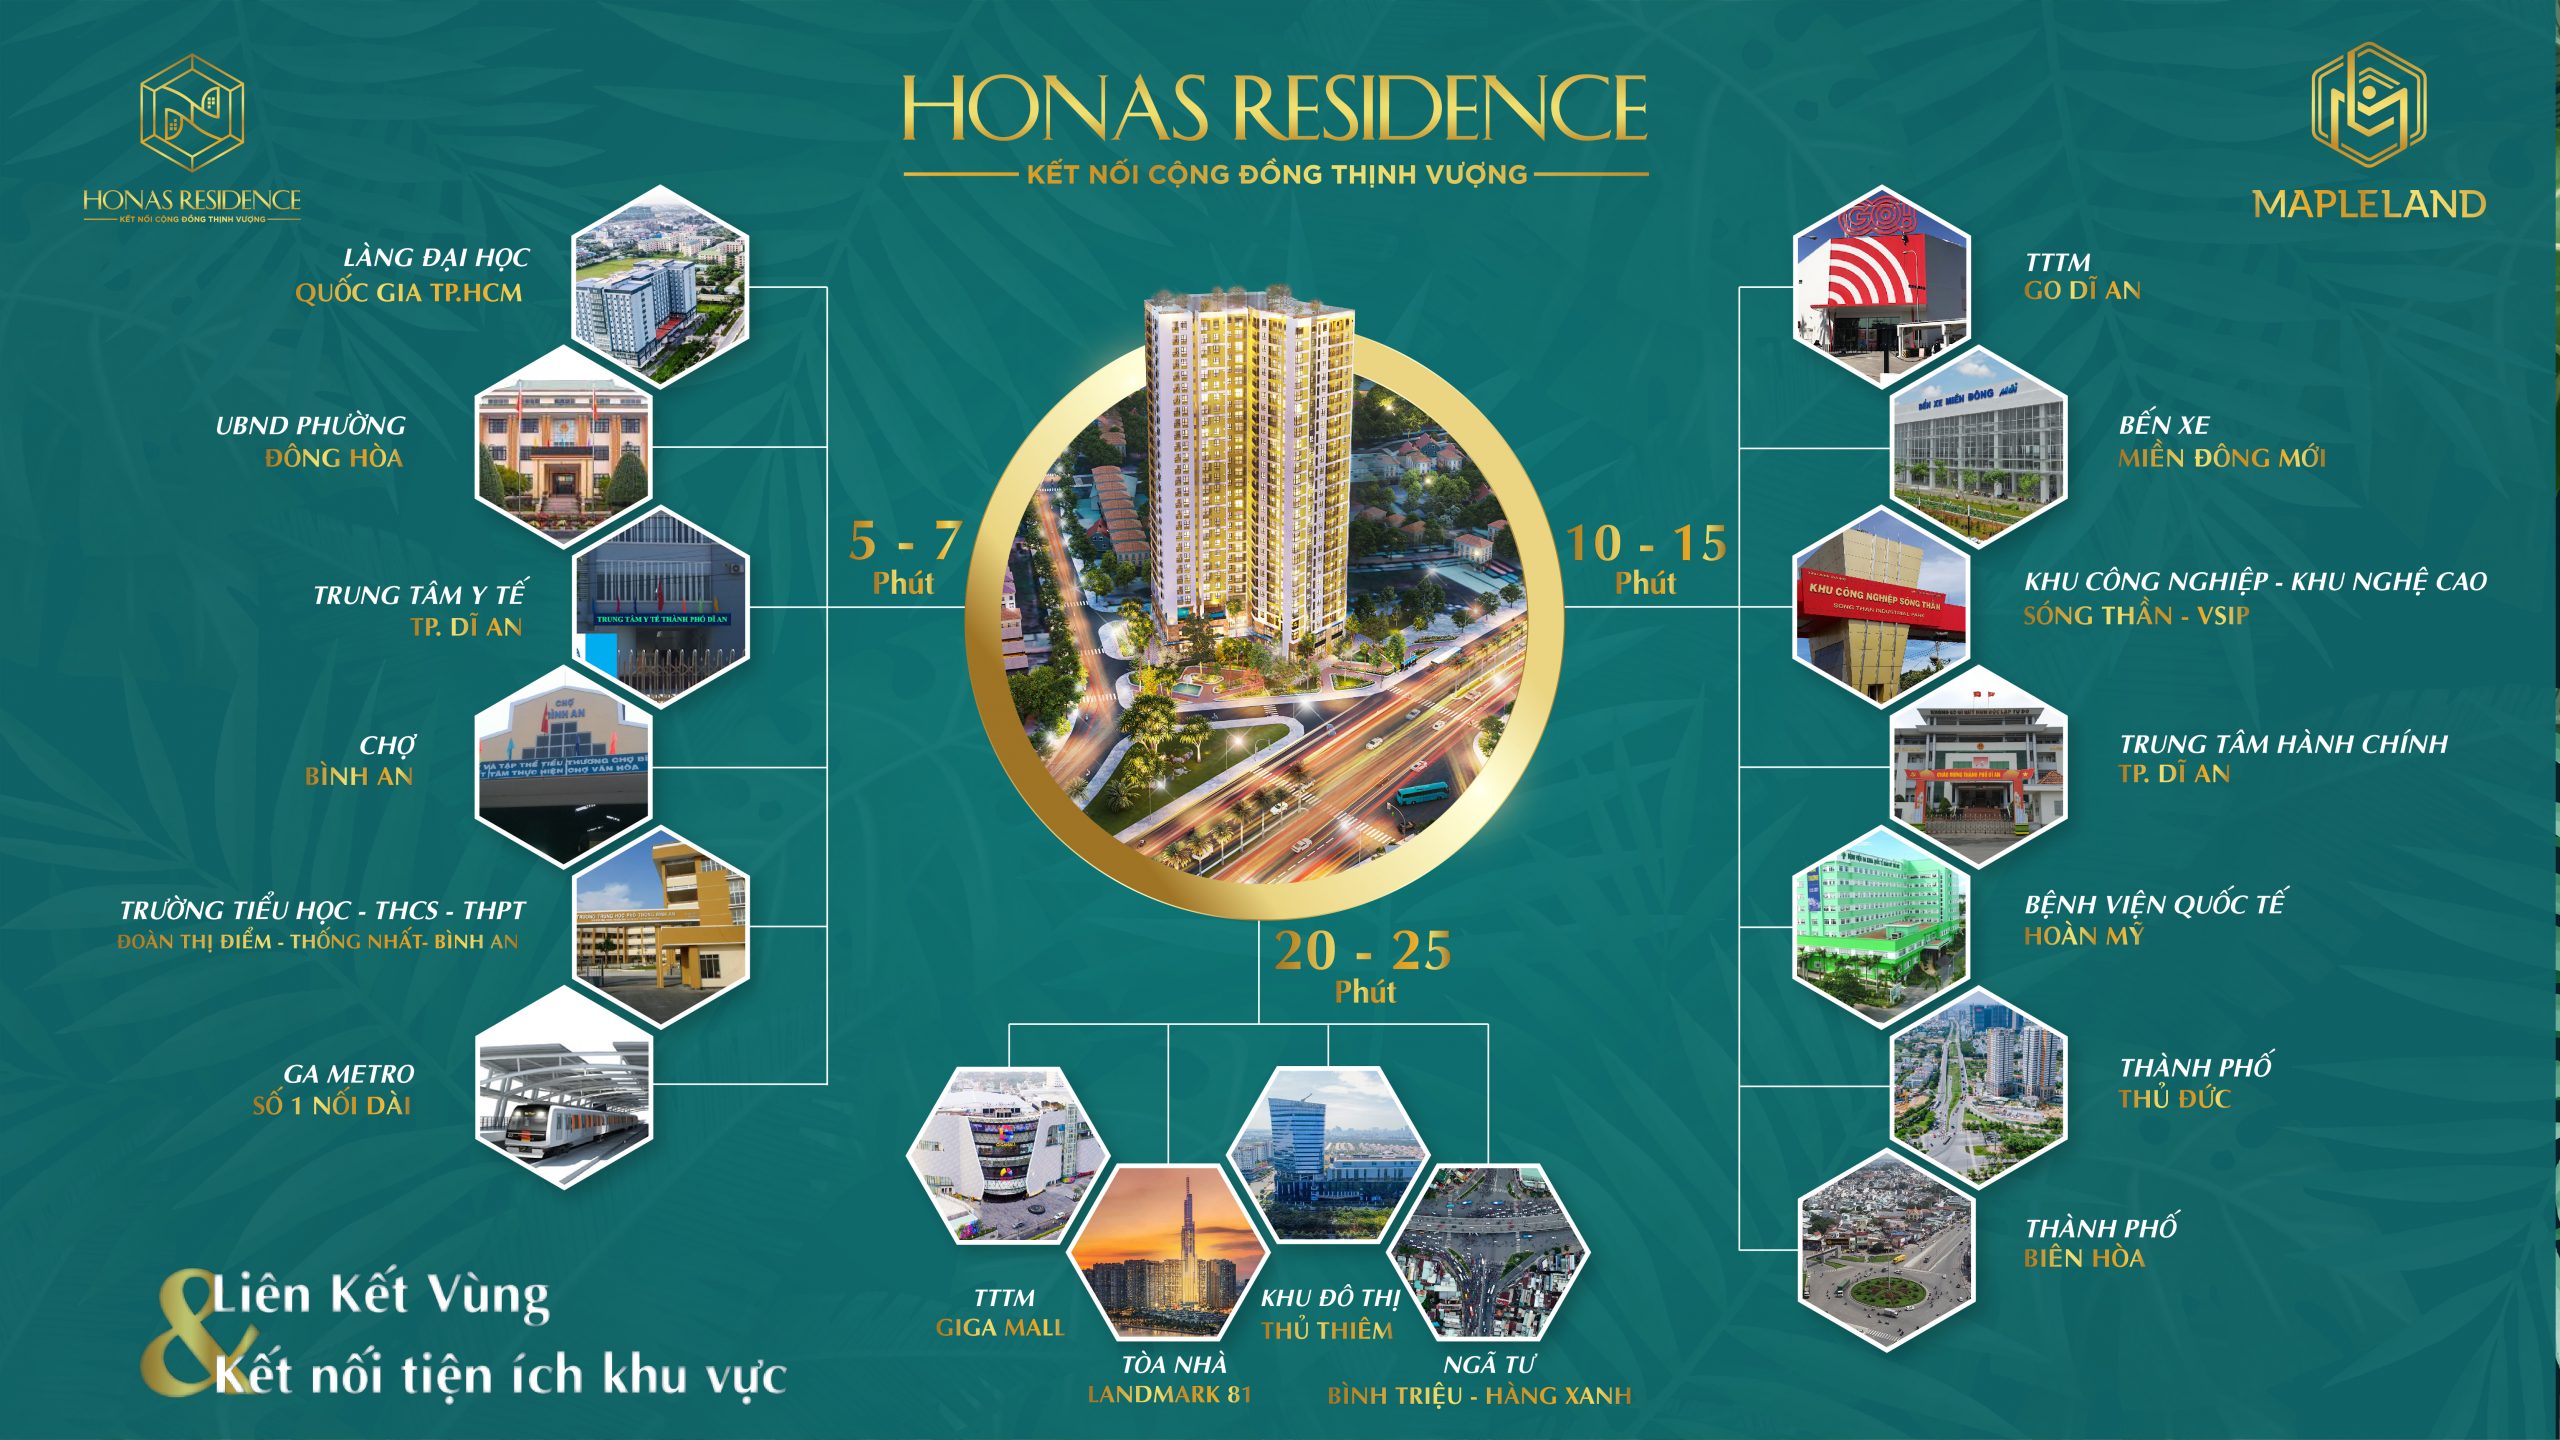 Honas Residence